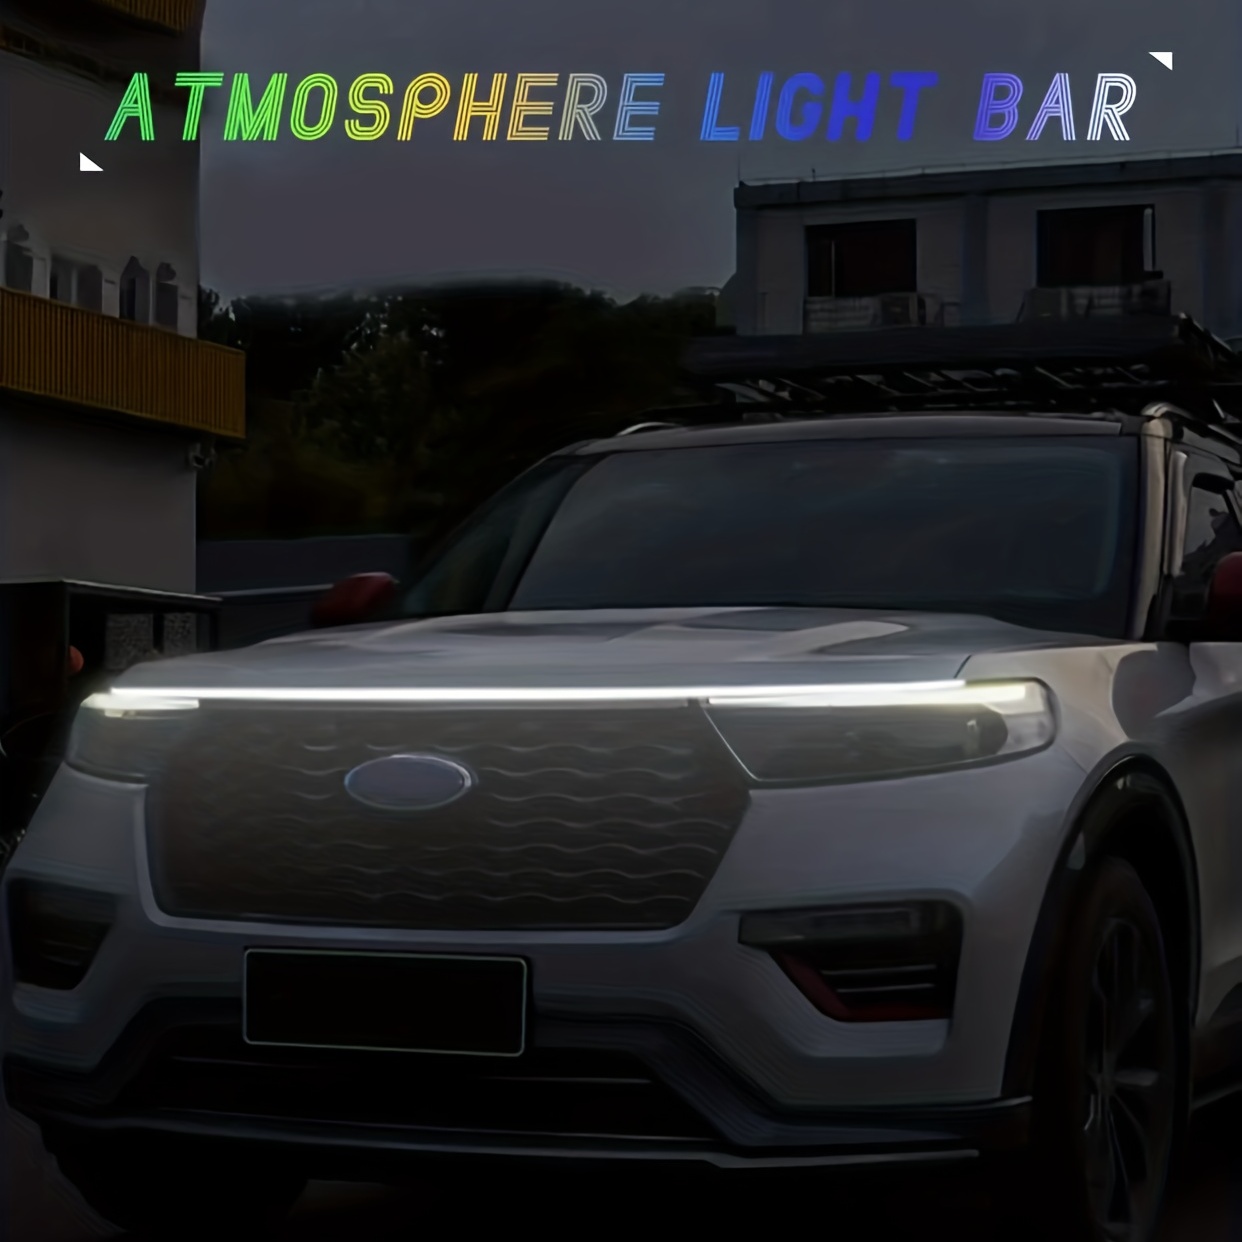  YM E-Bright voiture LED Light extérieurRGB lampe de capot avec  lampe frontale étanche multicolore dynamique Scan START hoodbeam Kit drl  lumière de jour pour voiture camion app télécommande 12V 59